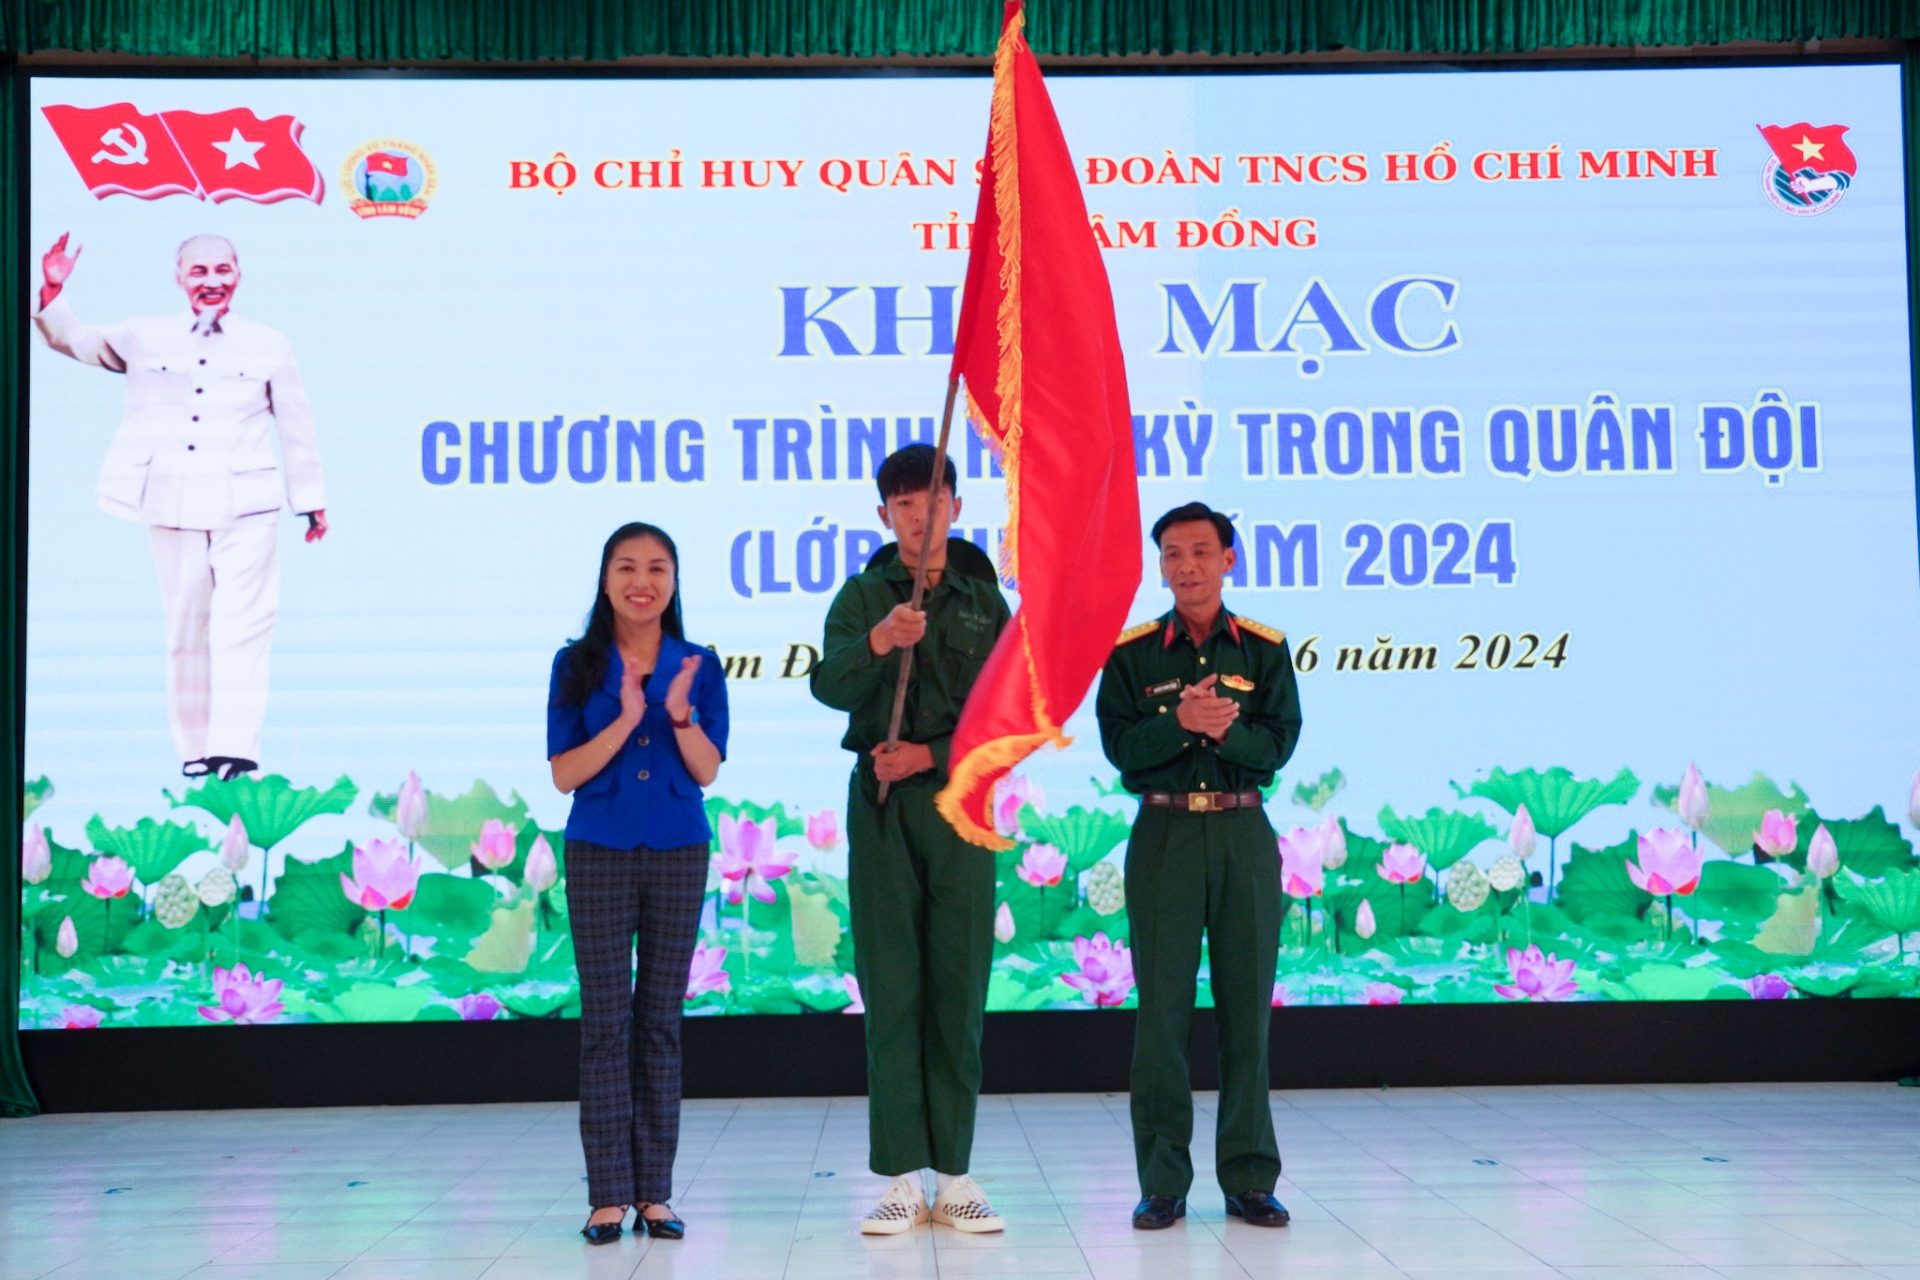 Trao cờ xuất quân của Ban tổ chức cho đại diện chiến sĩ tham gia chương trình Học kỳ quân đội